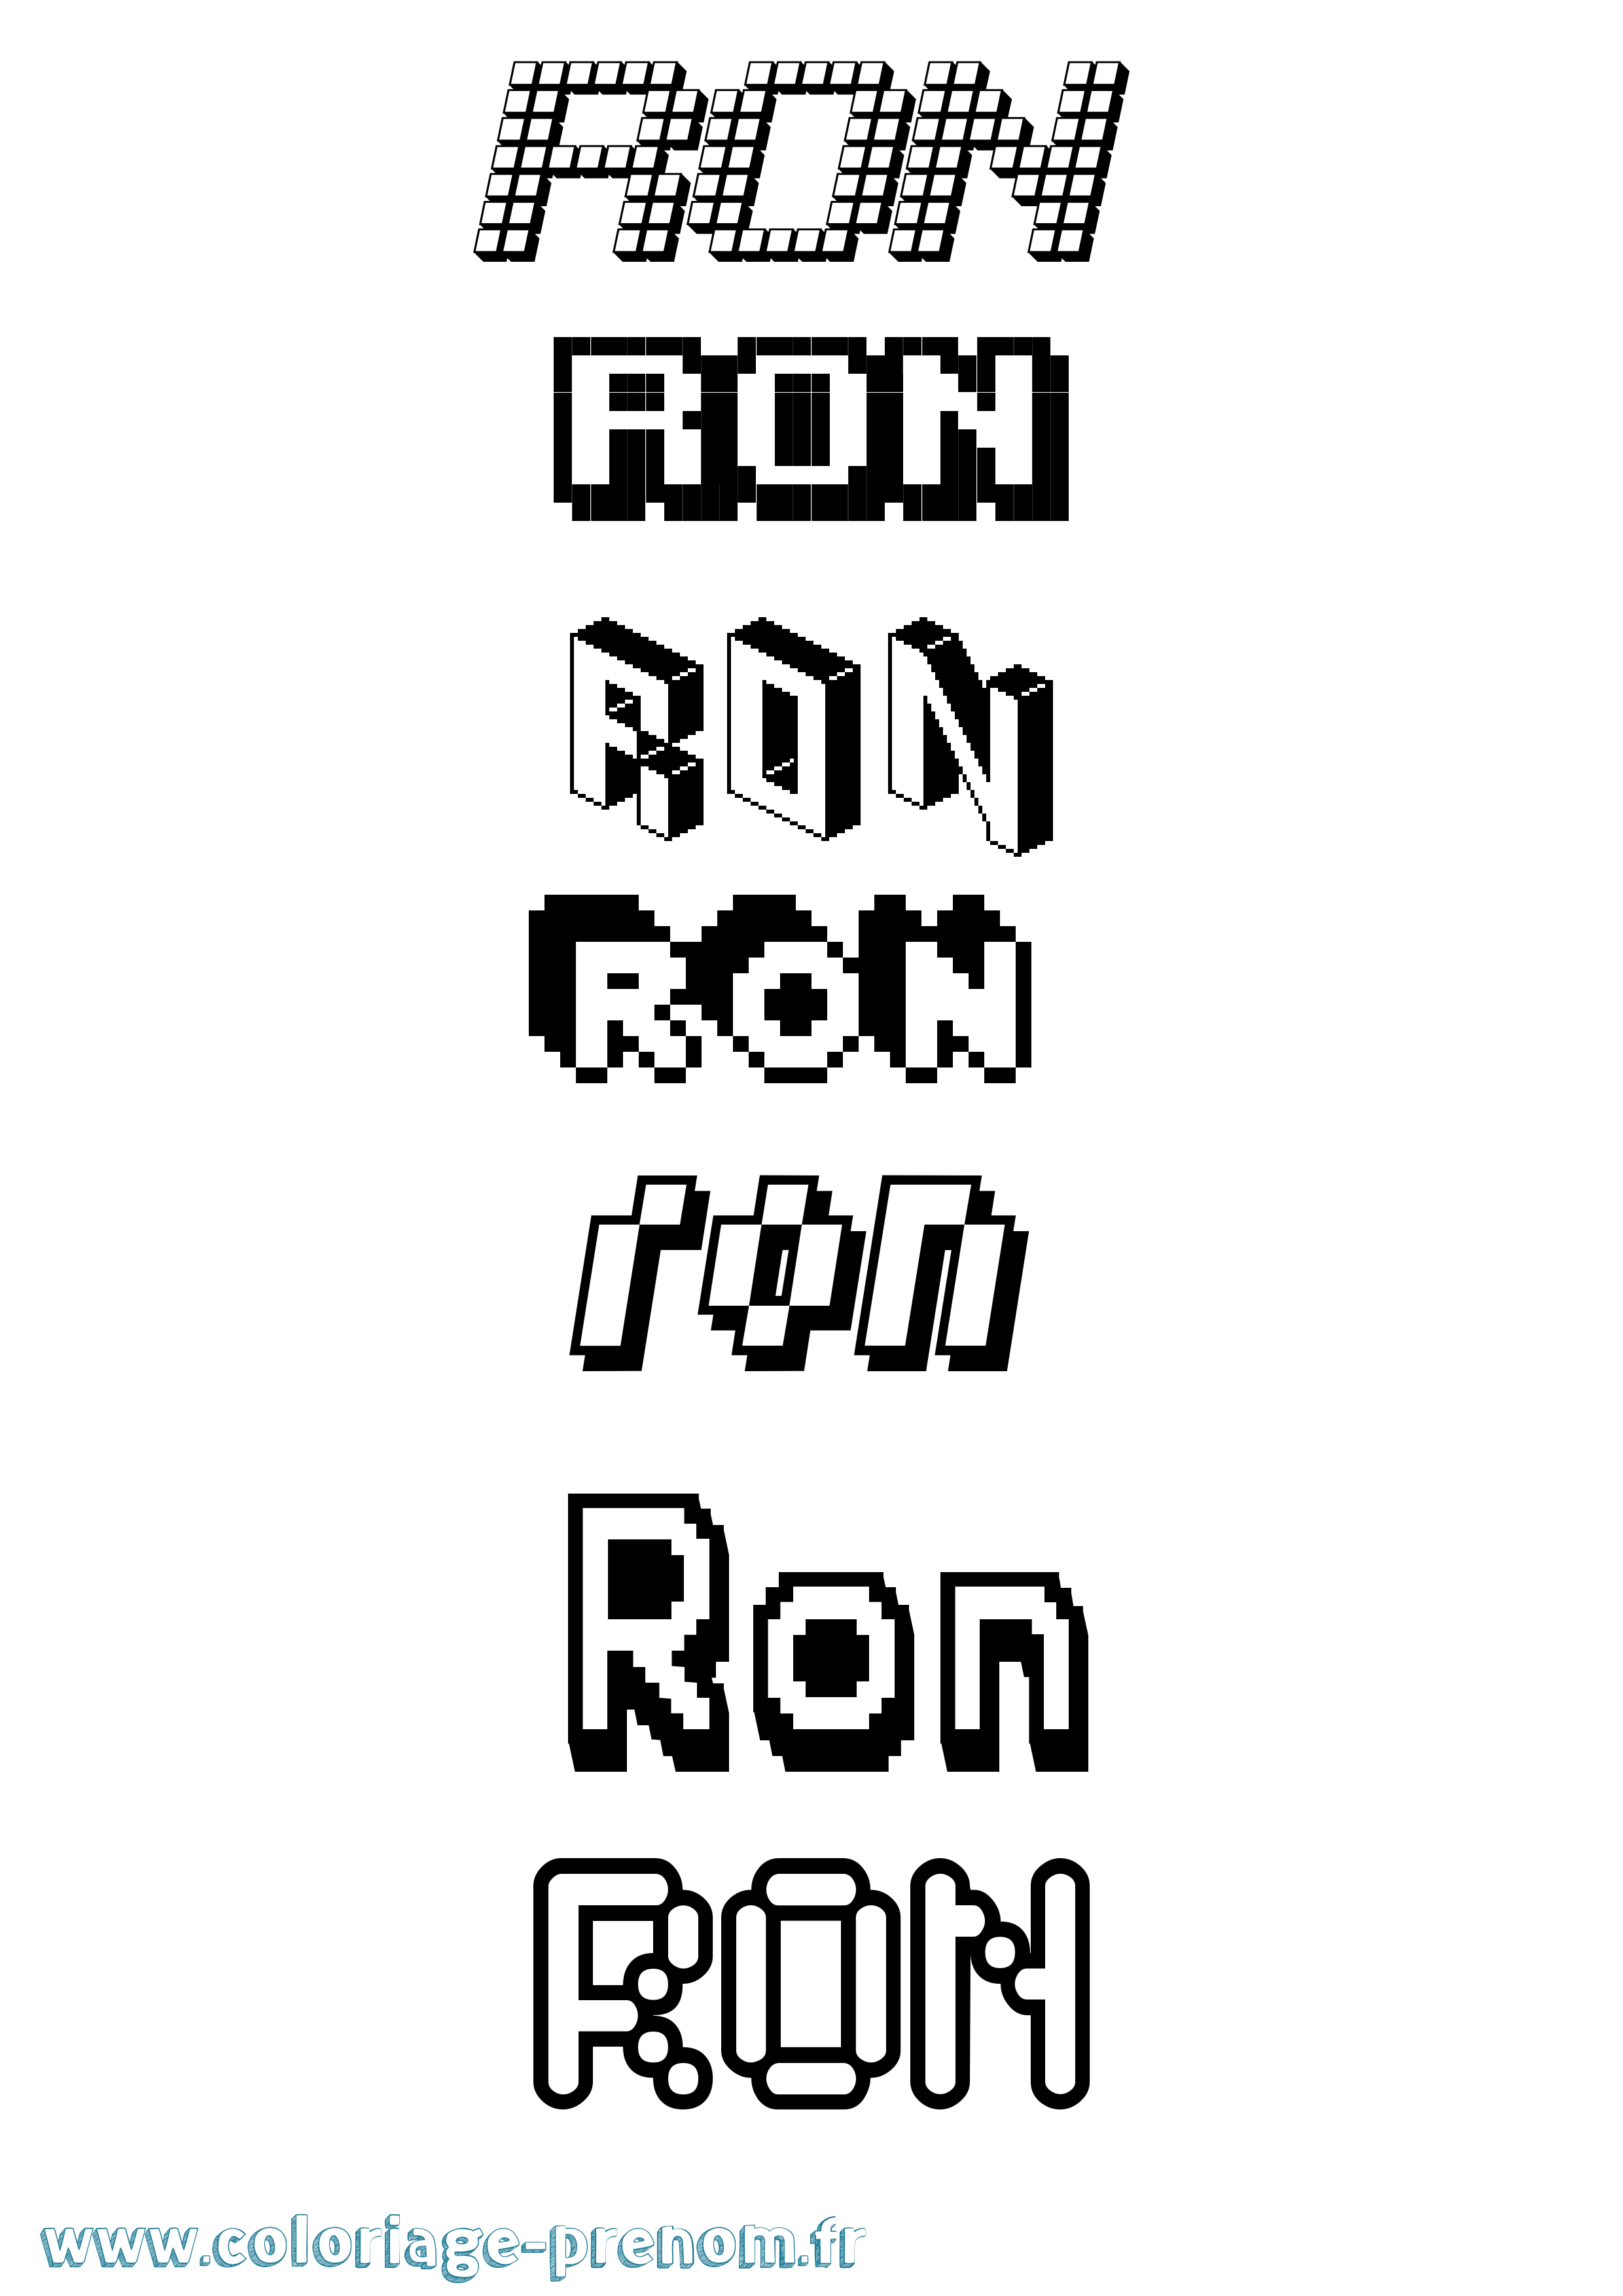 Coloriage prénom Ron Pixel